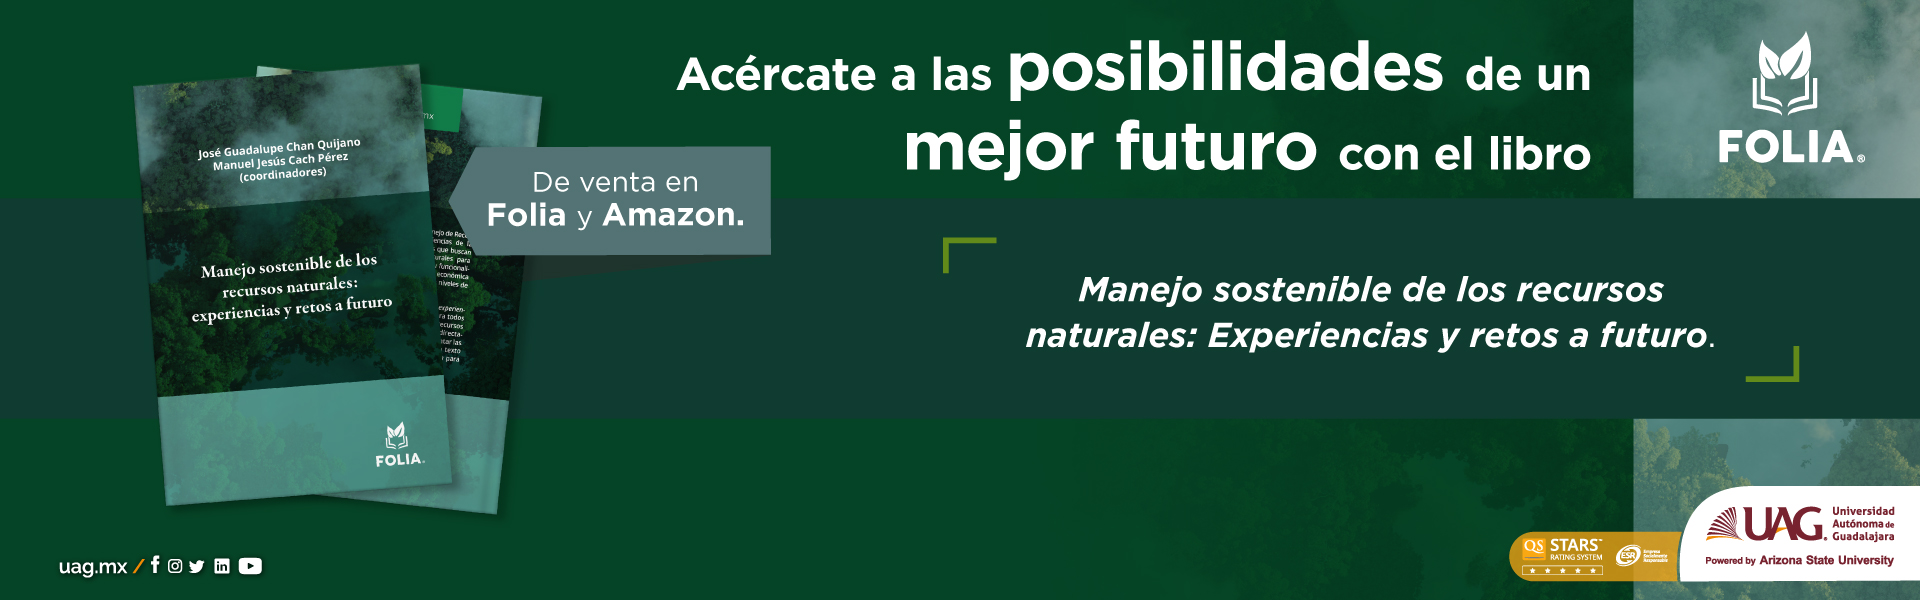 Adaptaciones-Manejo-Sostenible_BANNER 1920x600